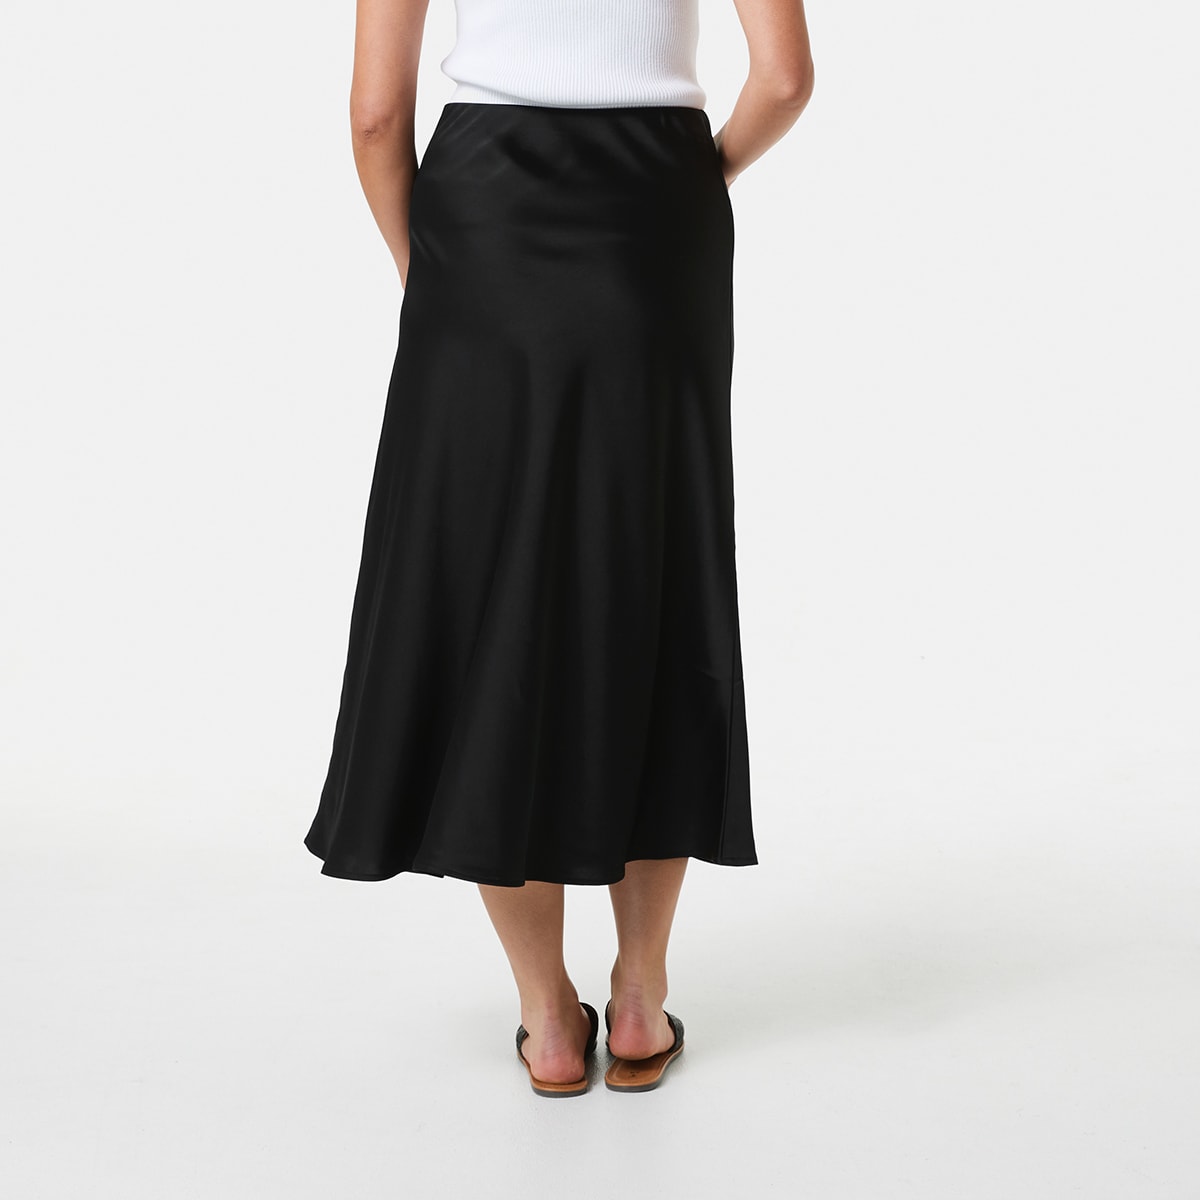 Satin A-Line Skirt - Kmart